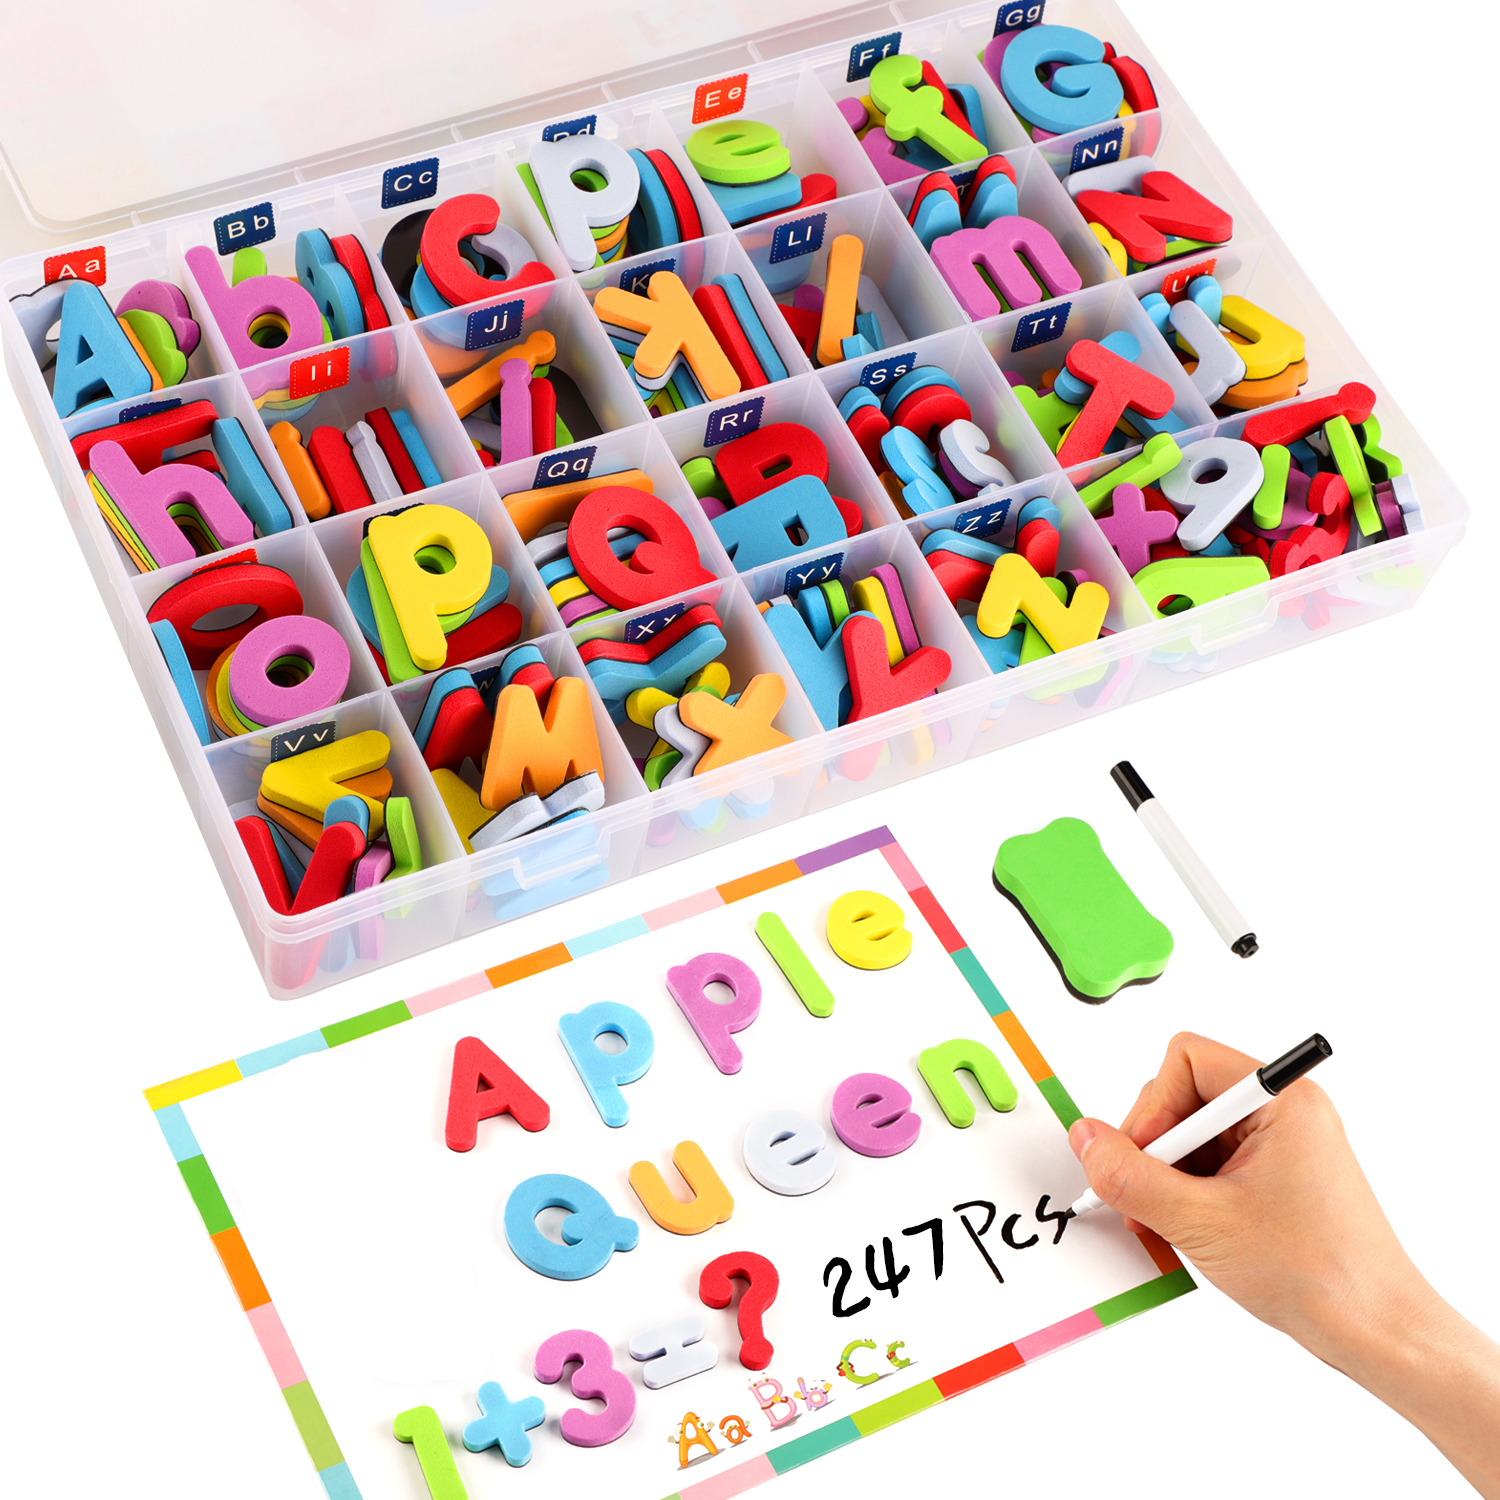 KingbeefLIU Jouet Multicolore Numéros Magnétiques Alphabet Réfrigérateur Aimant Apprentissage éducation Enfants Jouet Lettre Majuscule # 